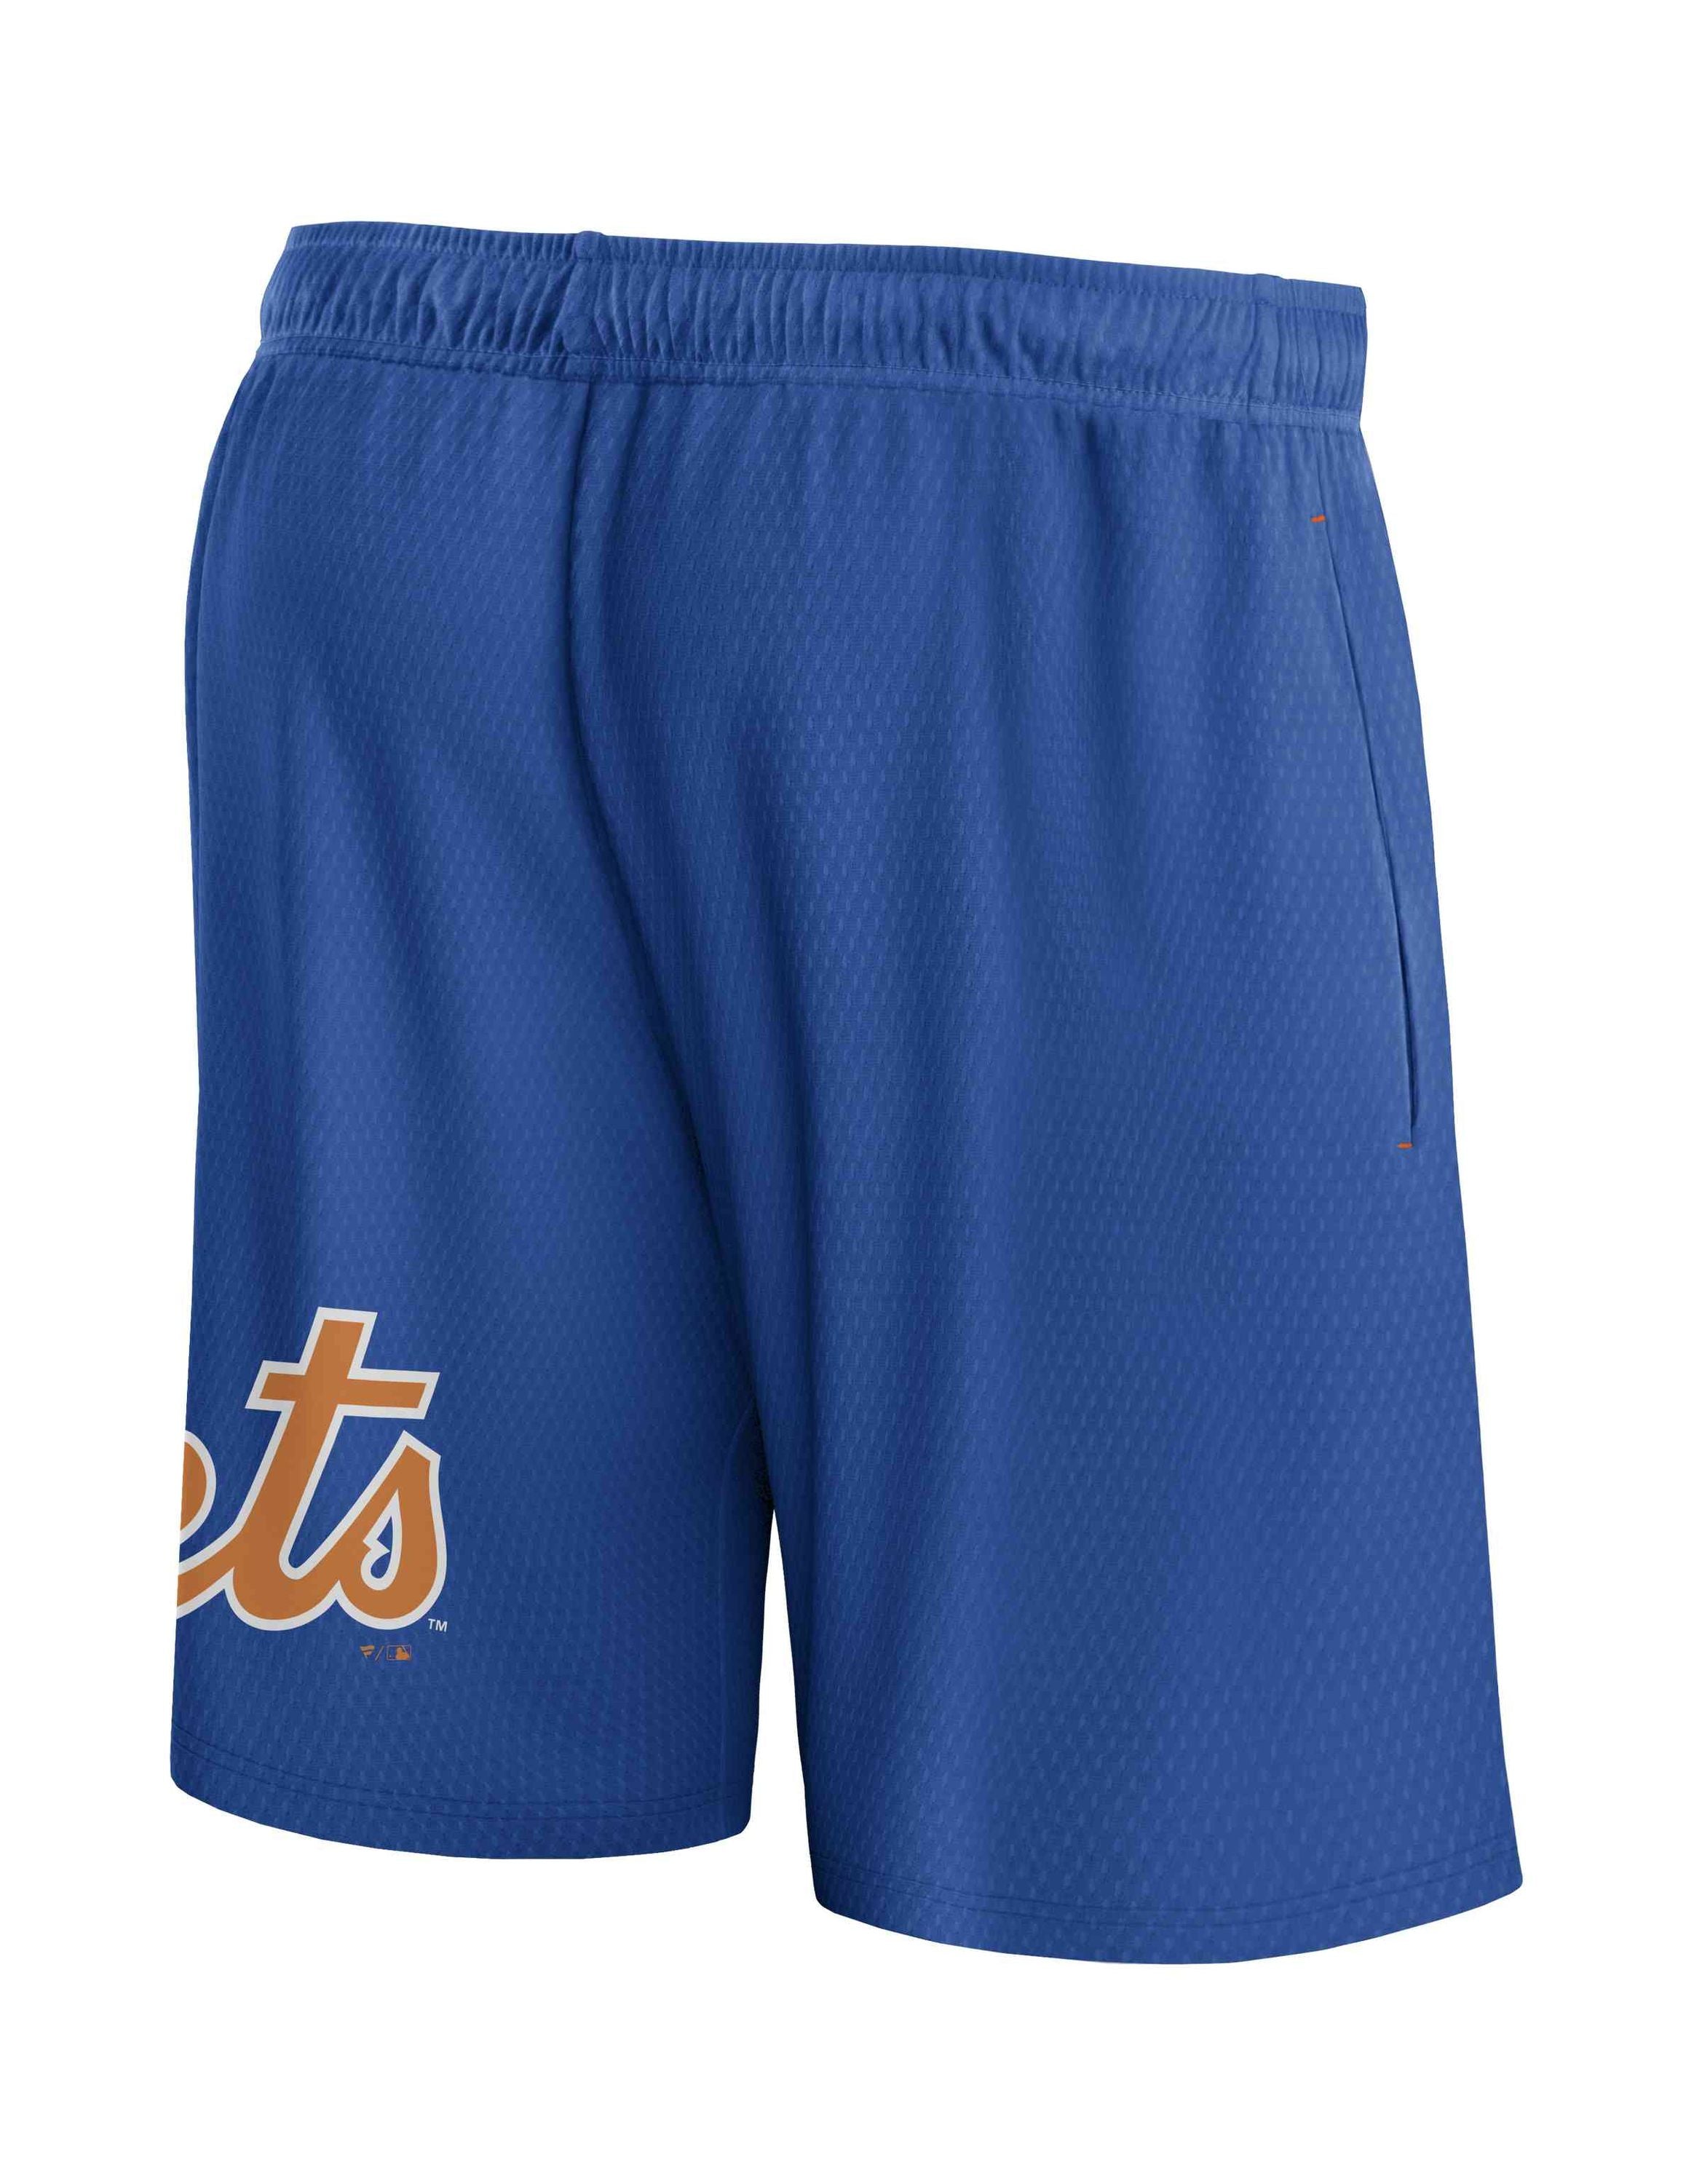 Fanatics - MLB New York Mets Mesh Shorts